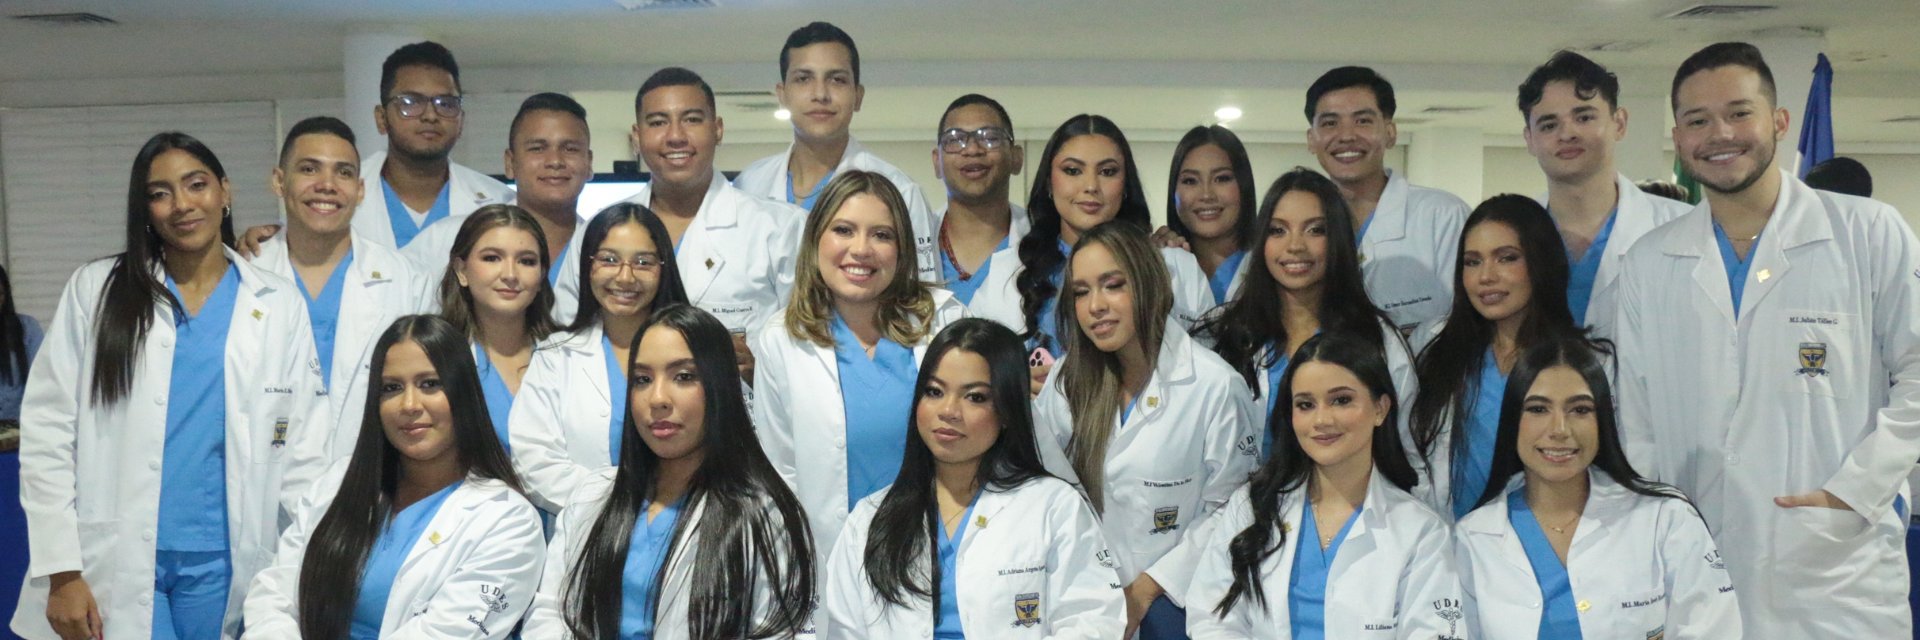 La UDES entrega a la región y el país primera cohorte de Médicos Internos